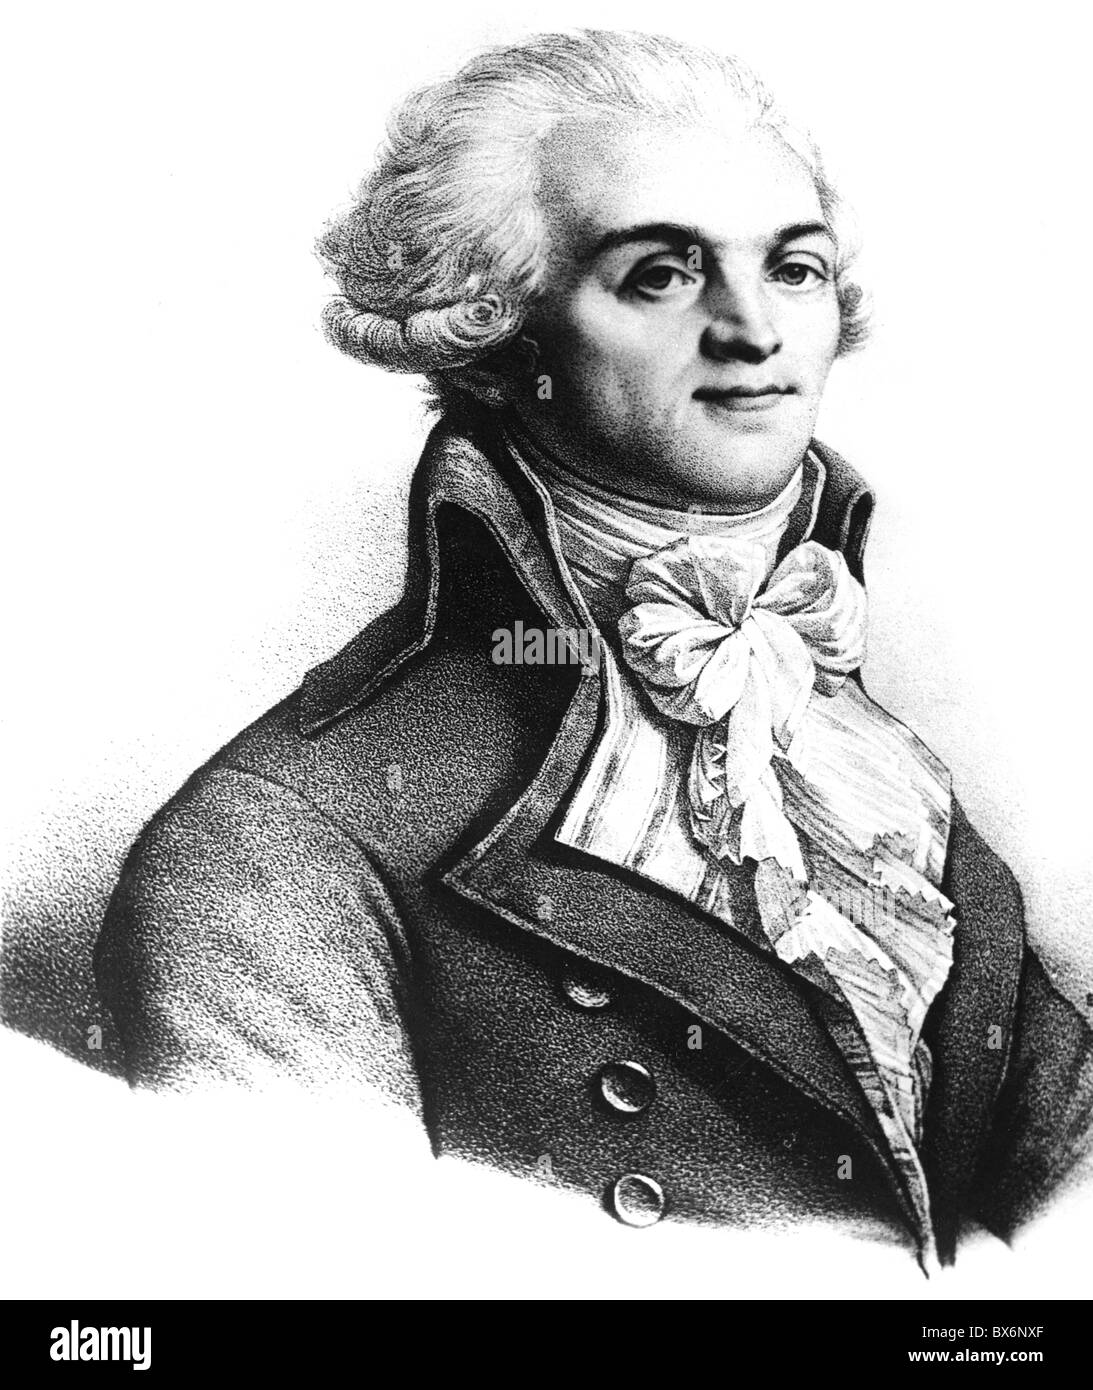 Robespierre, Maximilian de, 6.5.1758 - 28.7.1704, französischer Politiker, Mitglied des Ausschusses für öffentliche Sicherheit 27.7.1793 - 27.7.1704, halbe Länge, lithographisch, 19. Jahrhundert, Stockfoto